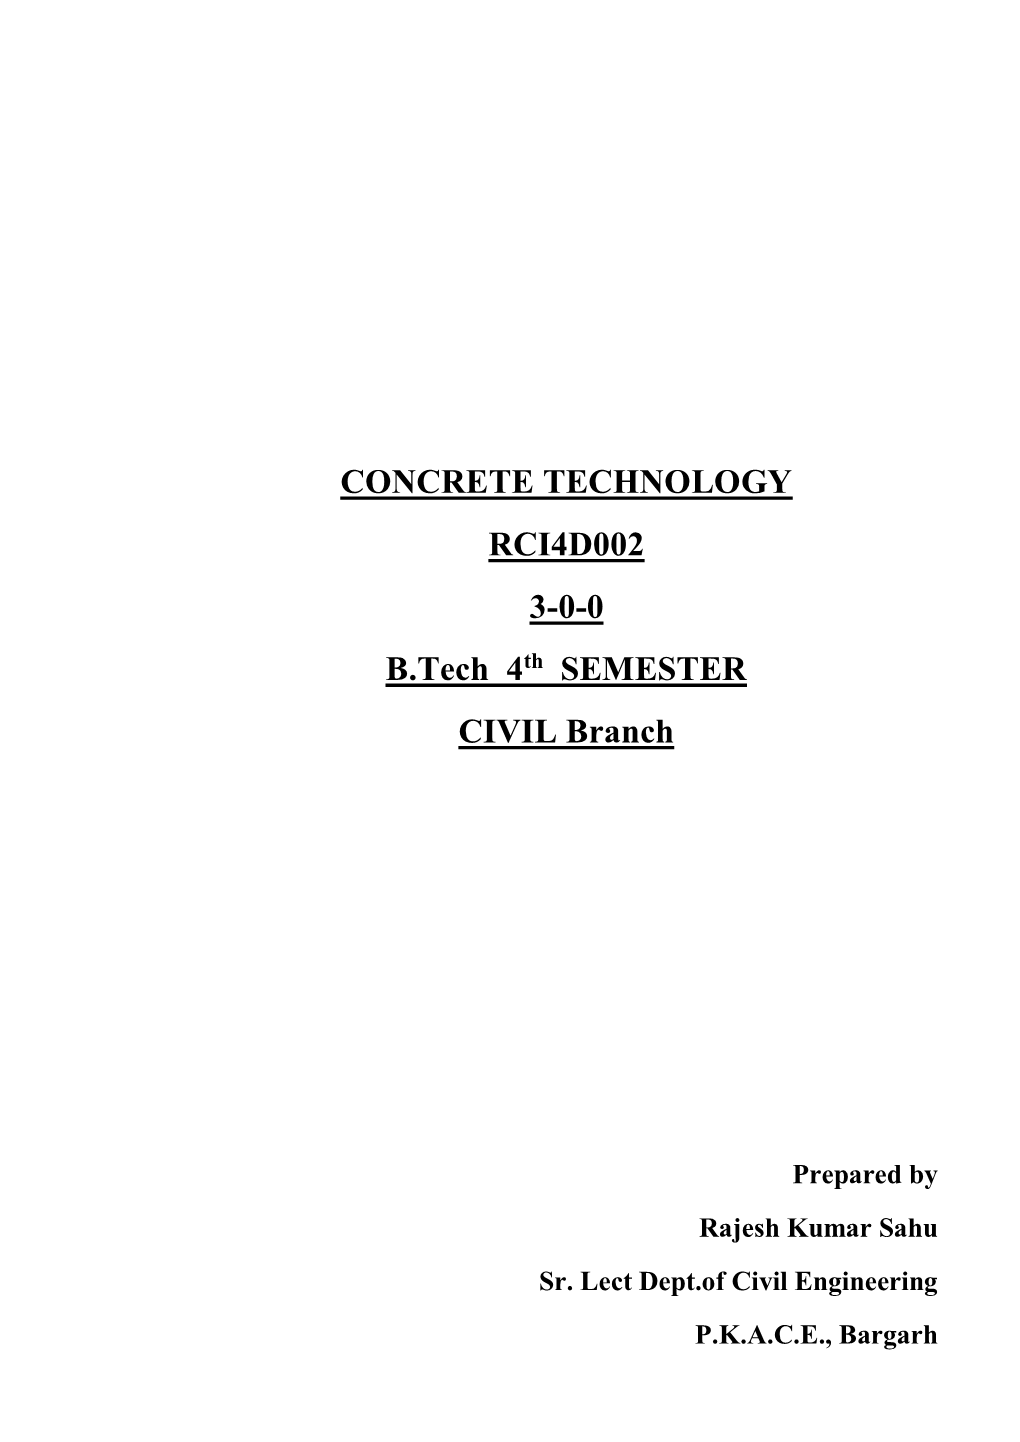 CONCRETE TECHNOLOGY RCI4D002 3-0-0 B.Tech 4Th SEMESTER CIVIL Branch